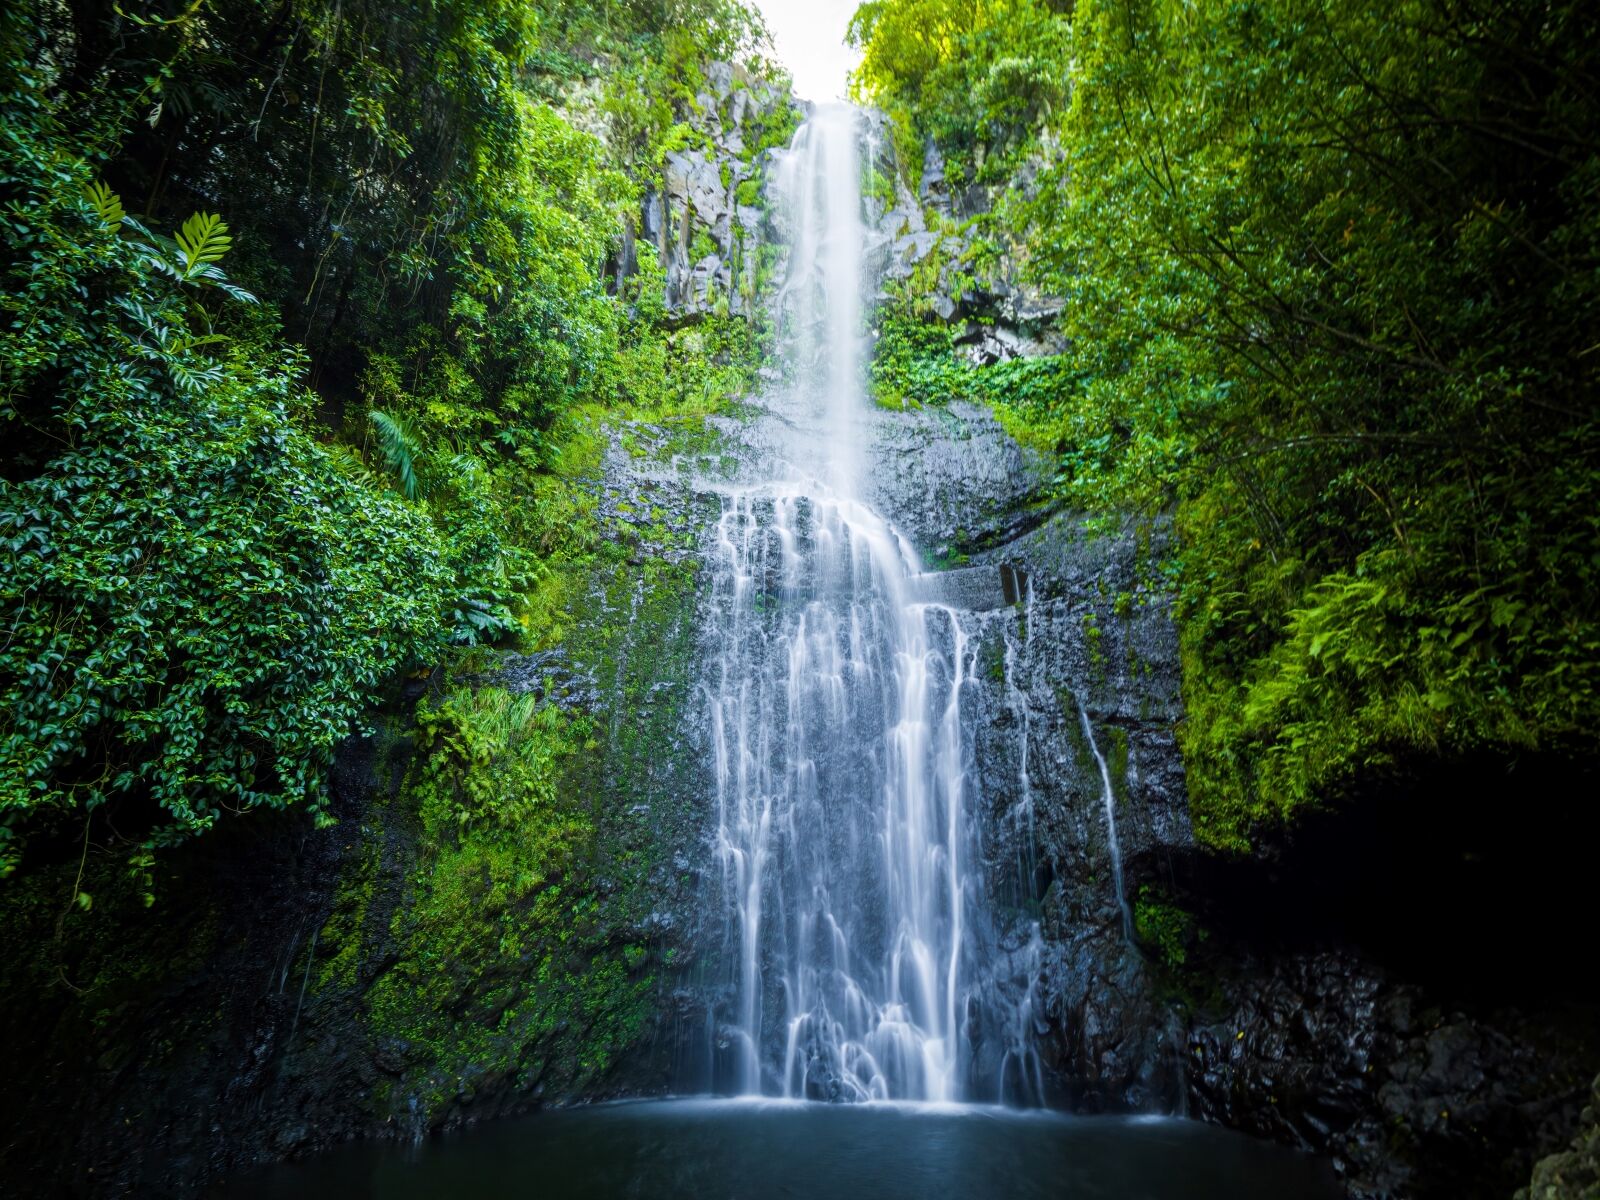 Wailua Falls in Kauai.